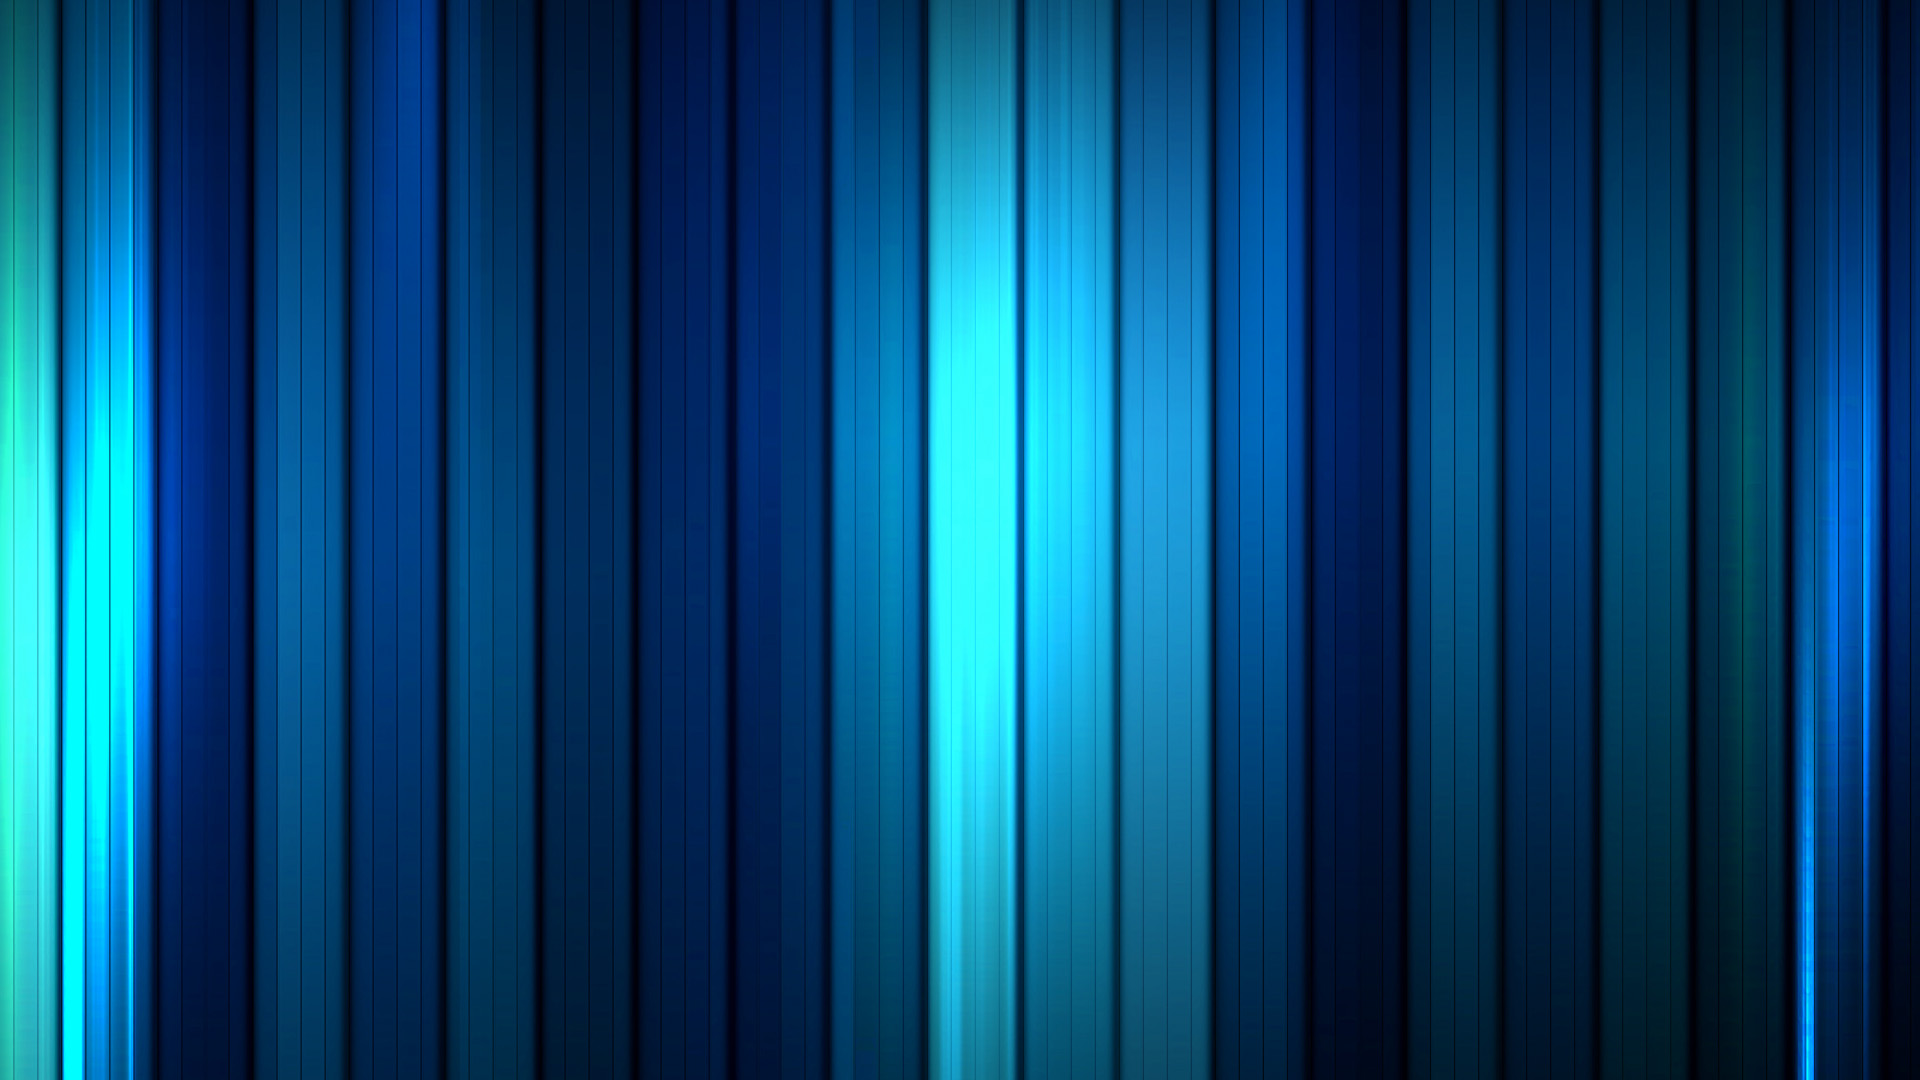 fondos de pantalla imágenes hd,azul,azul cobalto,turquesa,verde,azul eléctrico